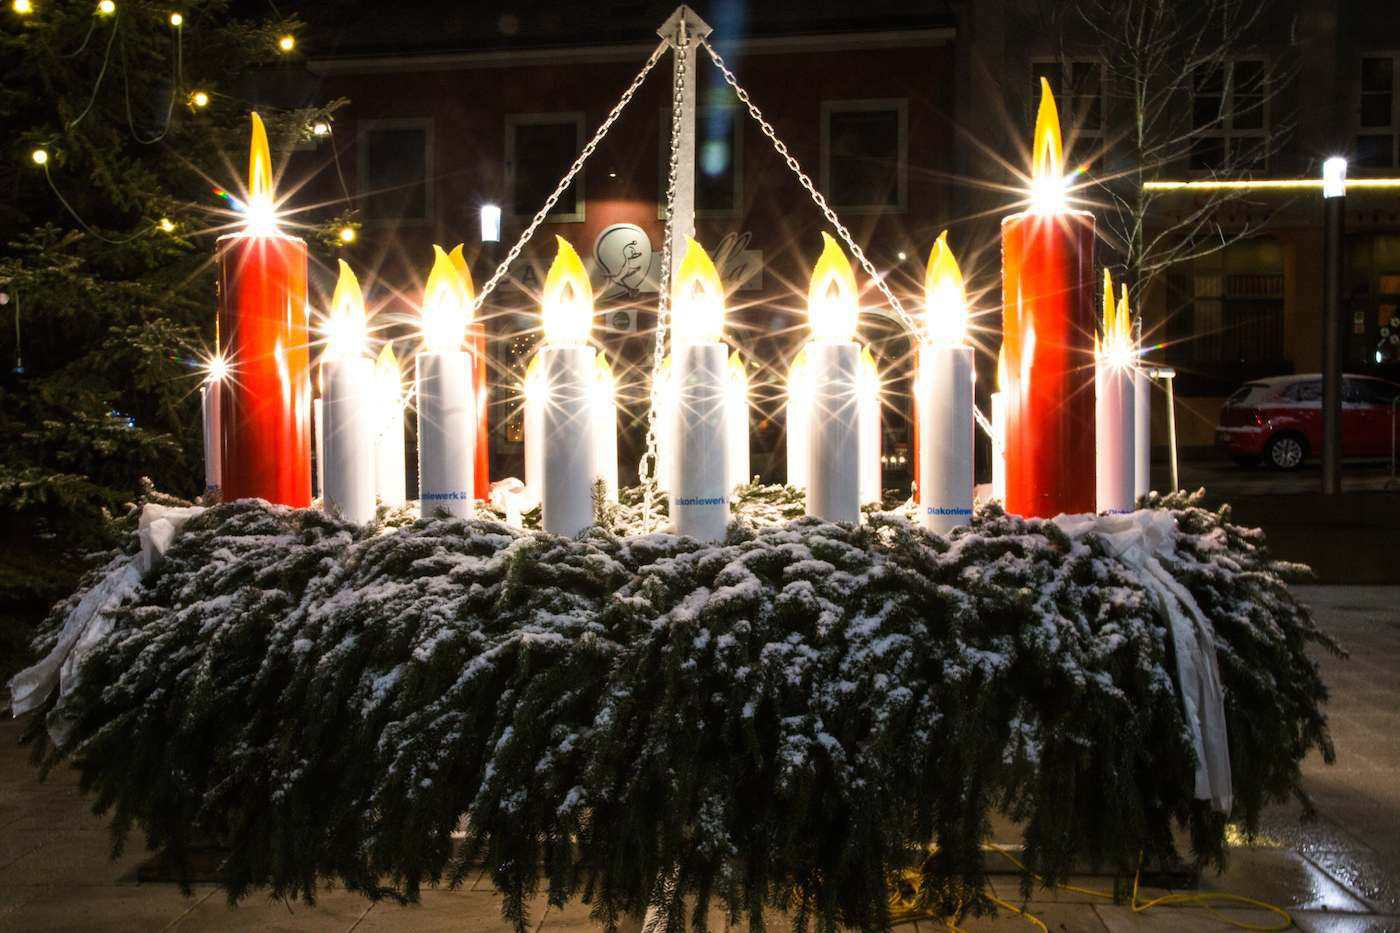 Der ursprüngliche Adventkranz hatte für jeden Tag des Advents eine Kerze. Johann Hinrich Wichern, der Gründer der evangelischen Diakonie, wollte damit Straßenkindern die Zeit bis Weihnachten verkürzen. Foto: Erwin Doppler